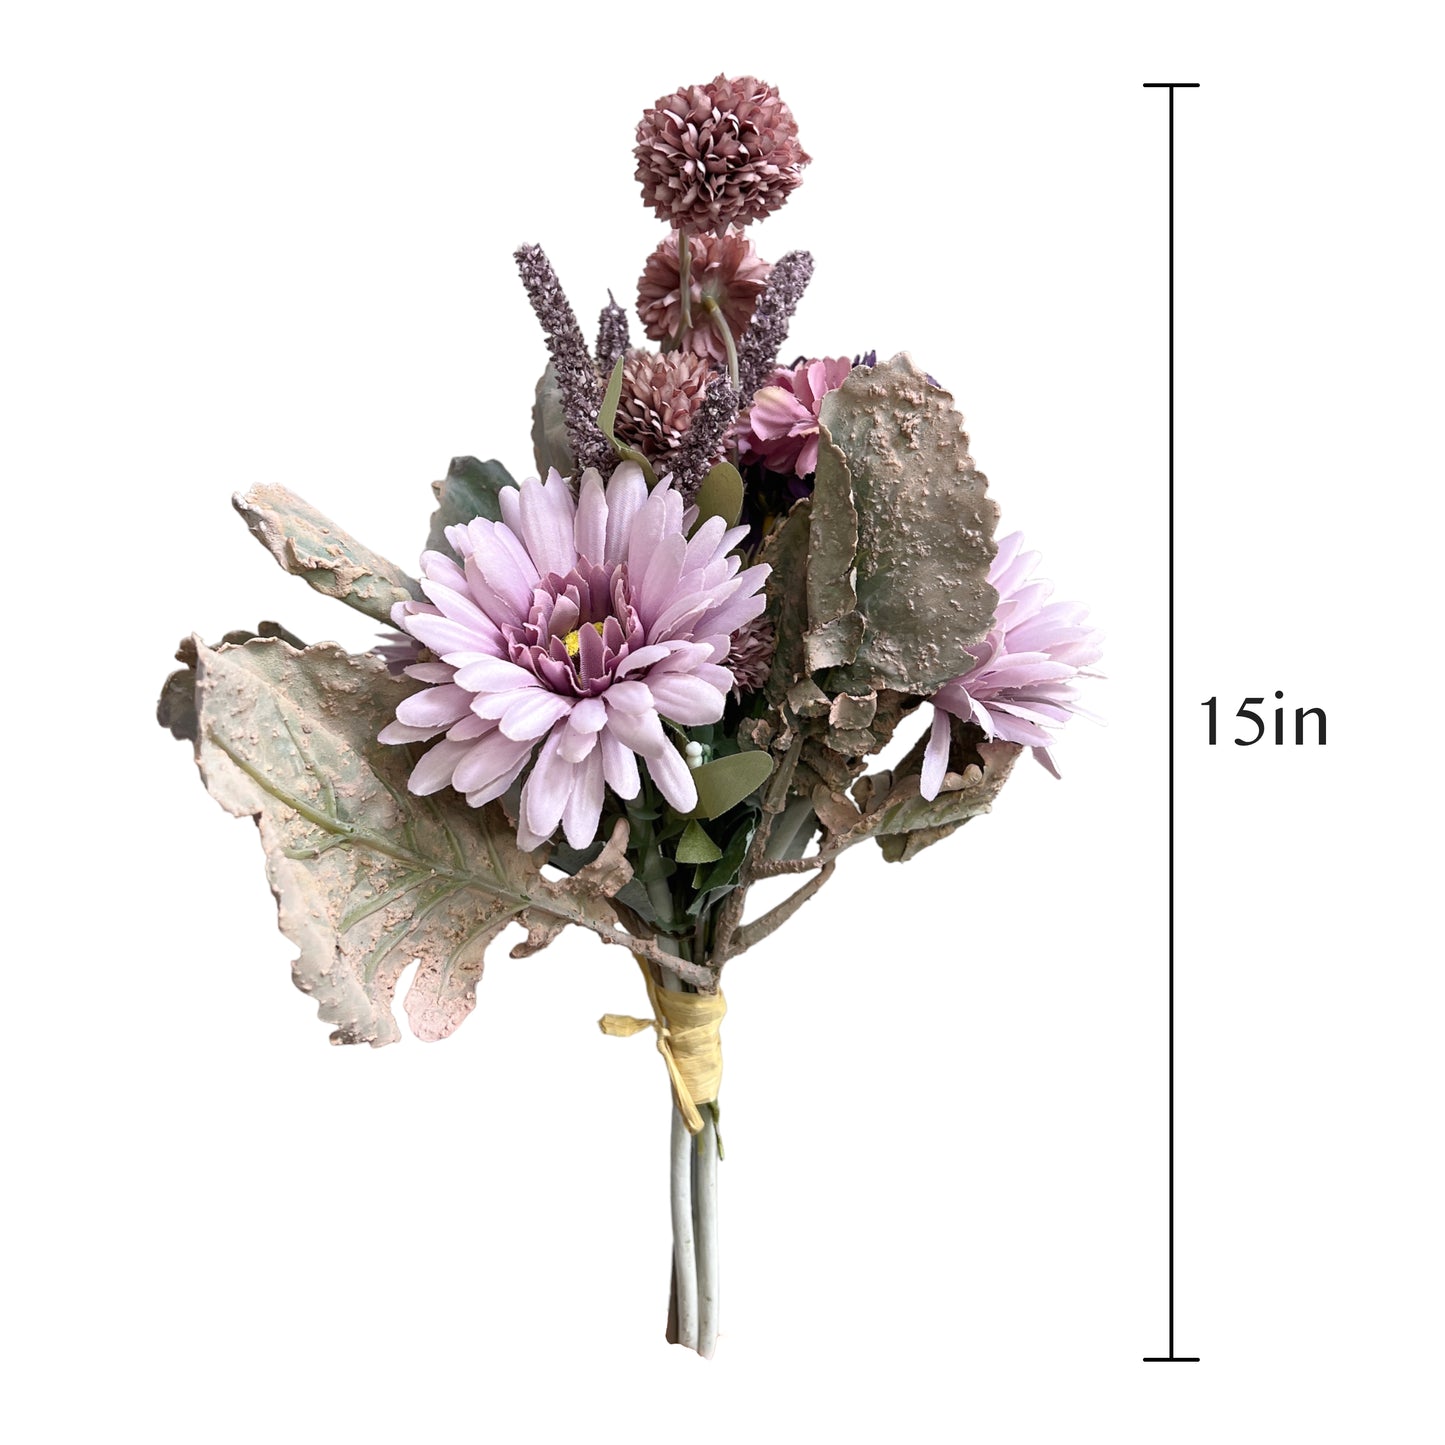 Chrysanthemum, Daisy, and Dandelion Bouquet Artificial Floral Arrangement